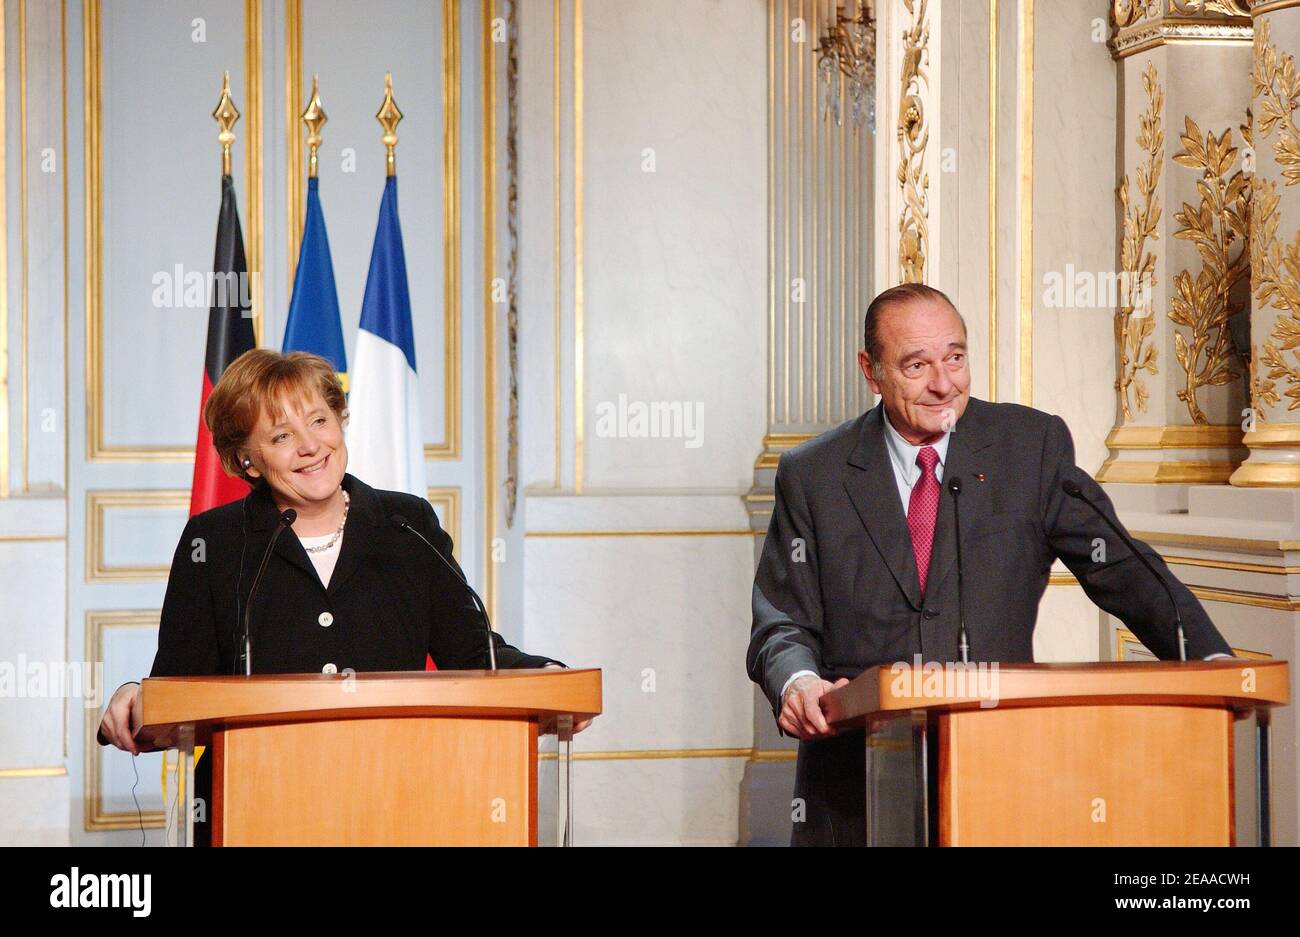 Die neu gewählte Bundeskanzlerin Angela Merkel (L) und der französische Präsident Jacques Chirac wurden am 23. November 2005 im Elysee-Palast in Paris, Frankreich, bei einer gemeinsamen Pressekonferenz gewählt. Merkel, die konservative Führerin einer seltenen links-rechts-Koalition in Deutschland, wurde am Dienstag vom bundestag offiziell zur Kanzlerin gewählt. Sie ging in Gespräche mit Chirac, als sie ihren internationalen Bogen als Führer der größten Wirtschaft Europas machte. Paris war ihr erstes ausländisches Ziel als Staatschef, eine Wahl, die als neue Bestätigung der Stärke der deutsch-französischen Beziehungen im Herzen der Europäischen Union angesehen wurde. Stockfoto